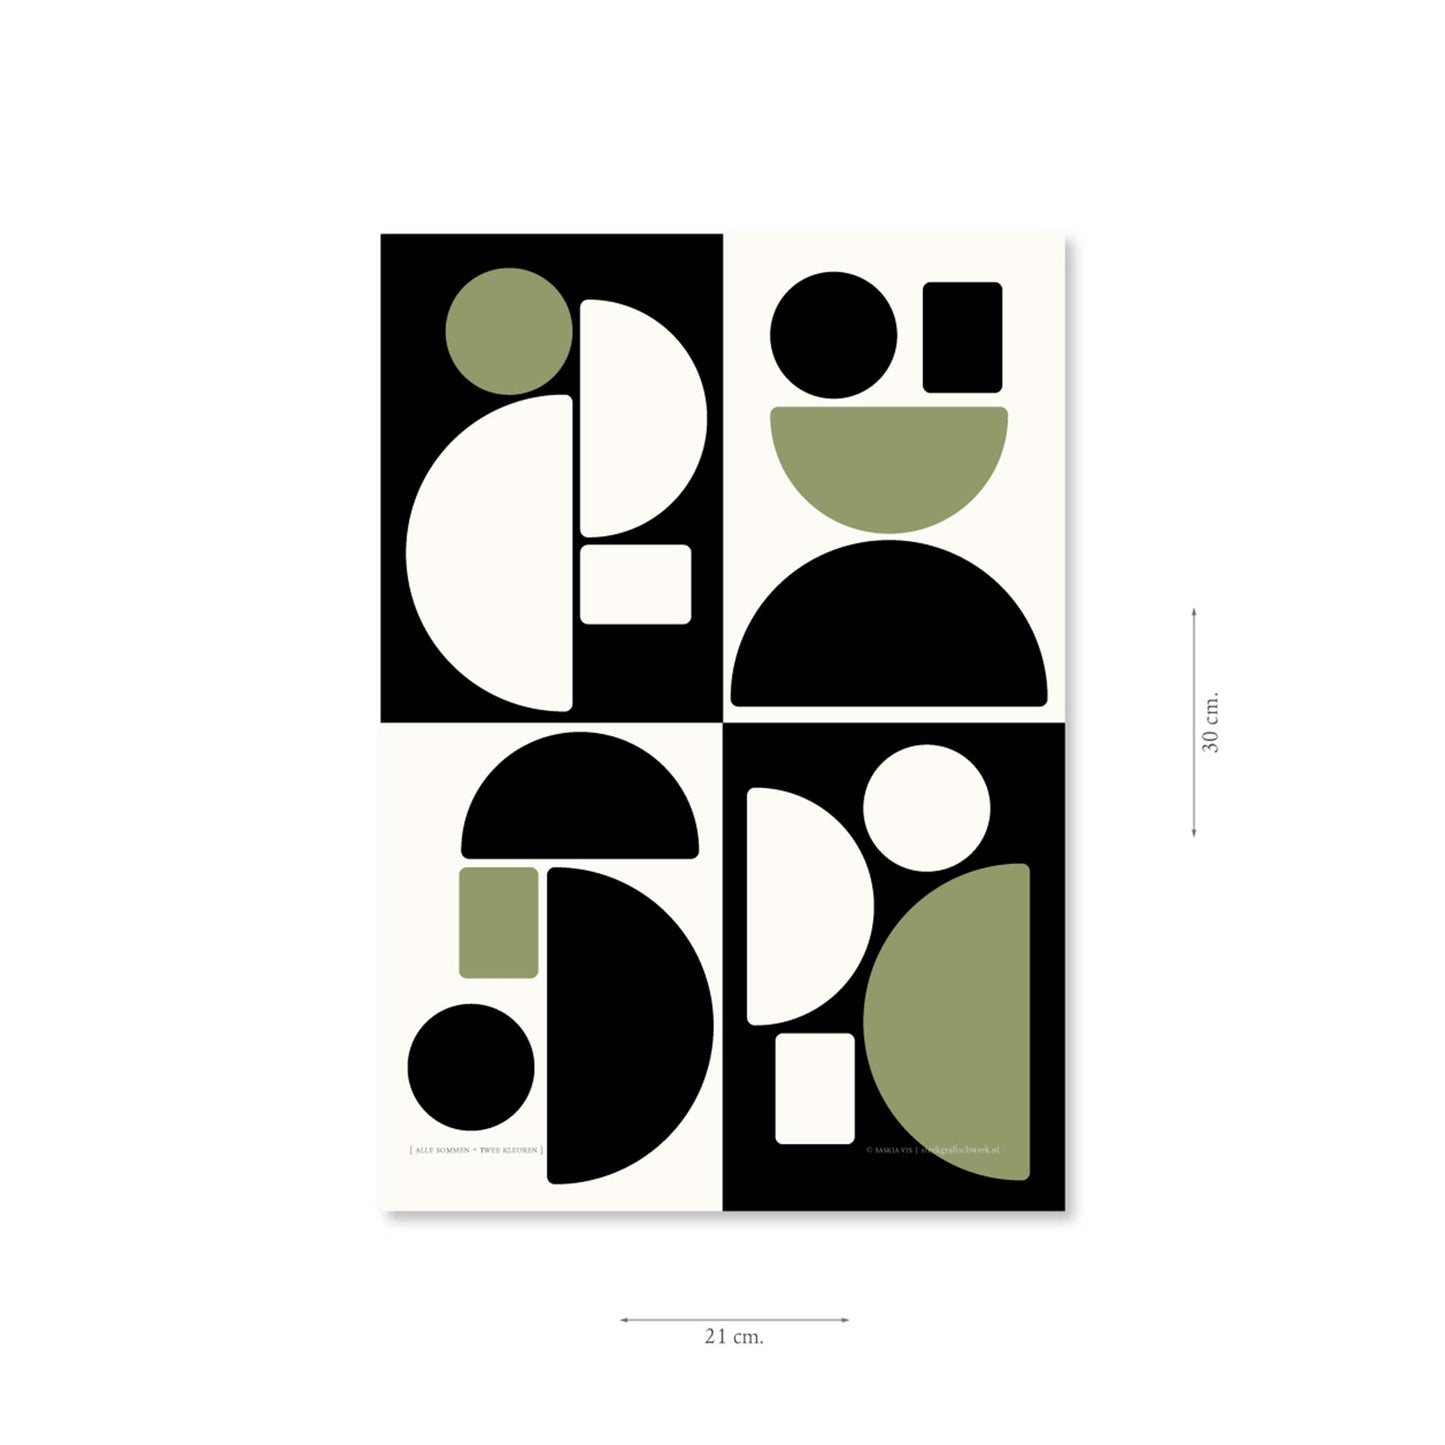 Productafbeelding poster "alle sommen + twee kleuren" met aanduiding van het formaat erop weergegeven 21 x 30 cm